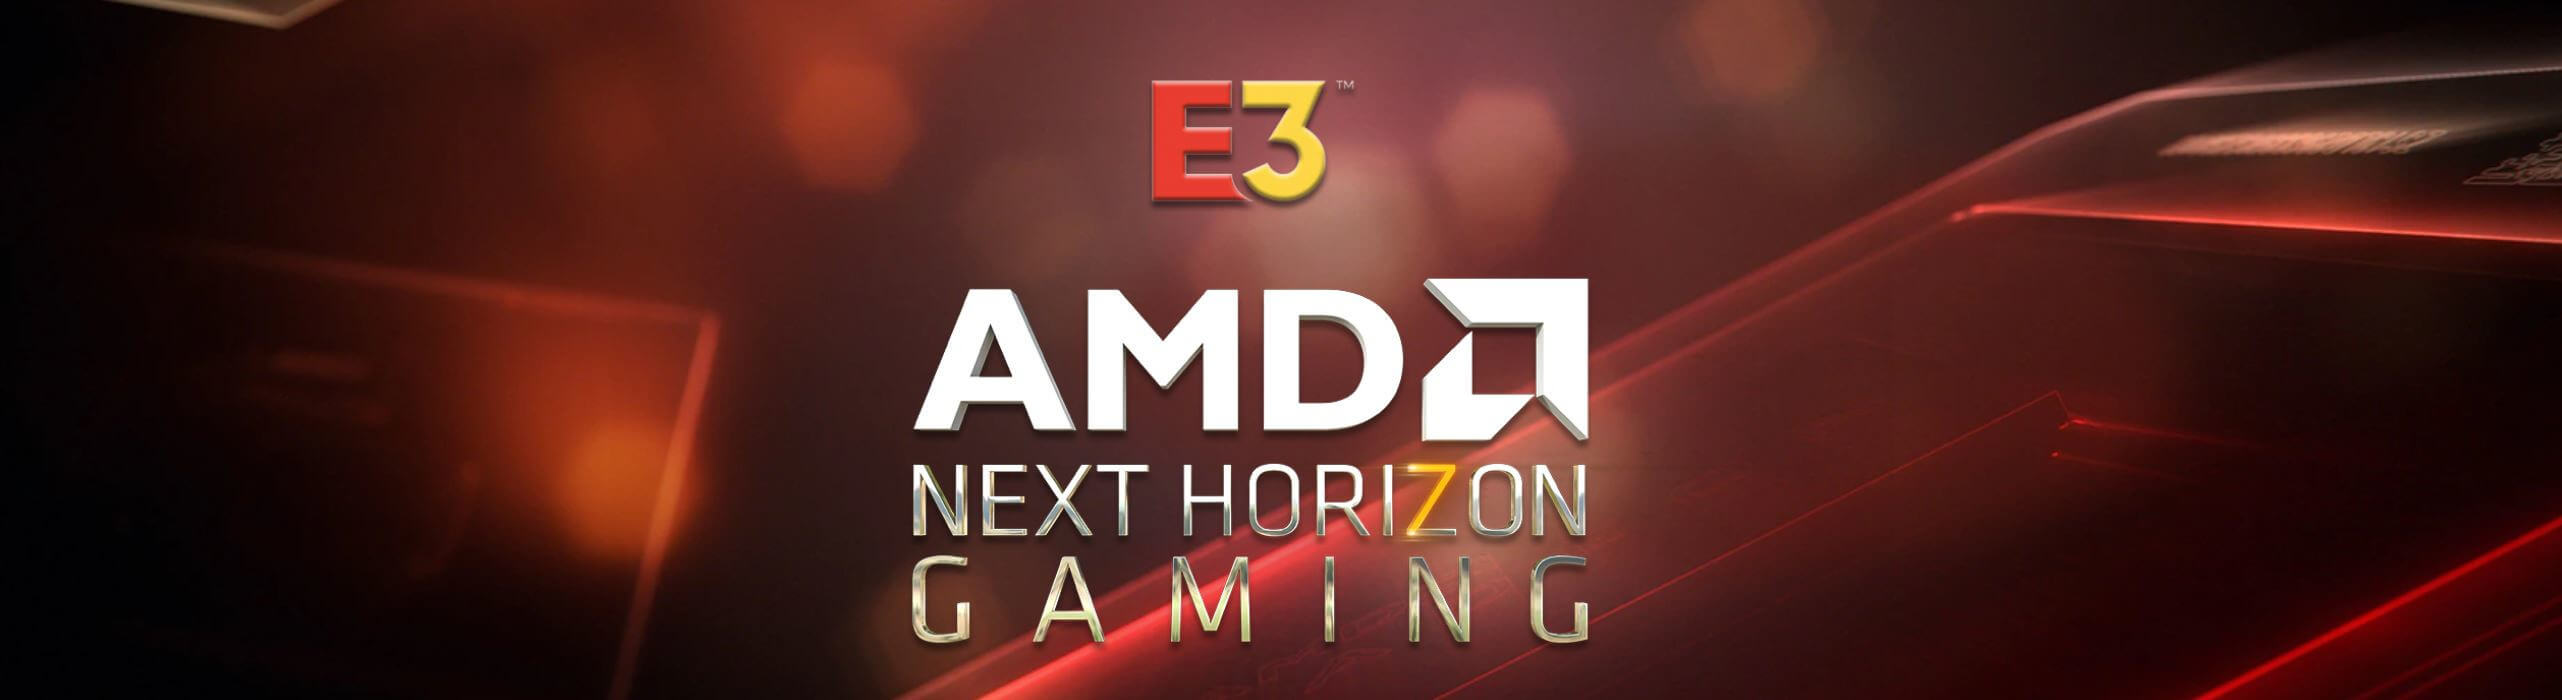 AMD Next Horizon Gaming 2019